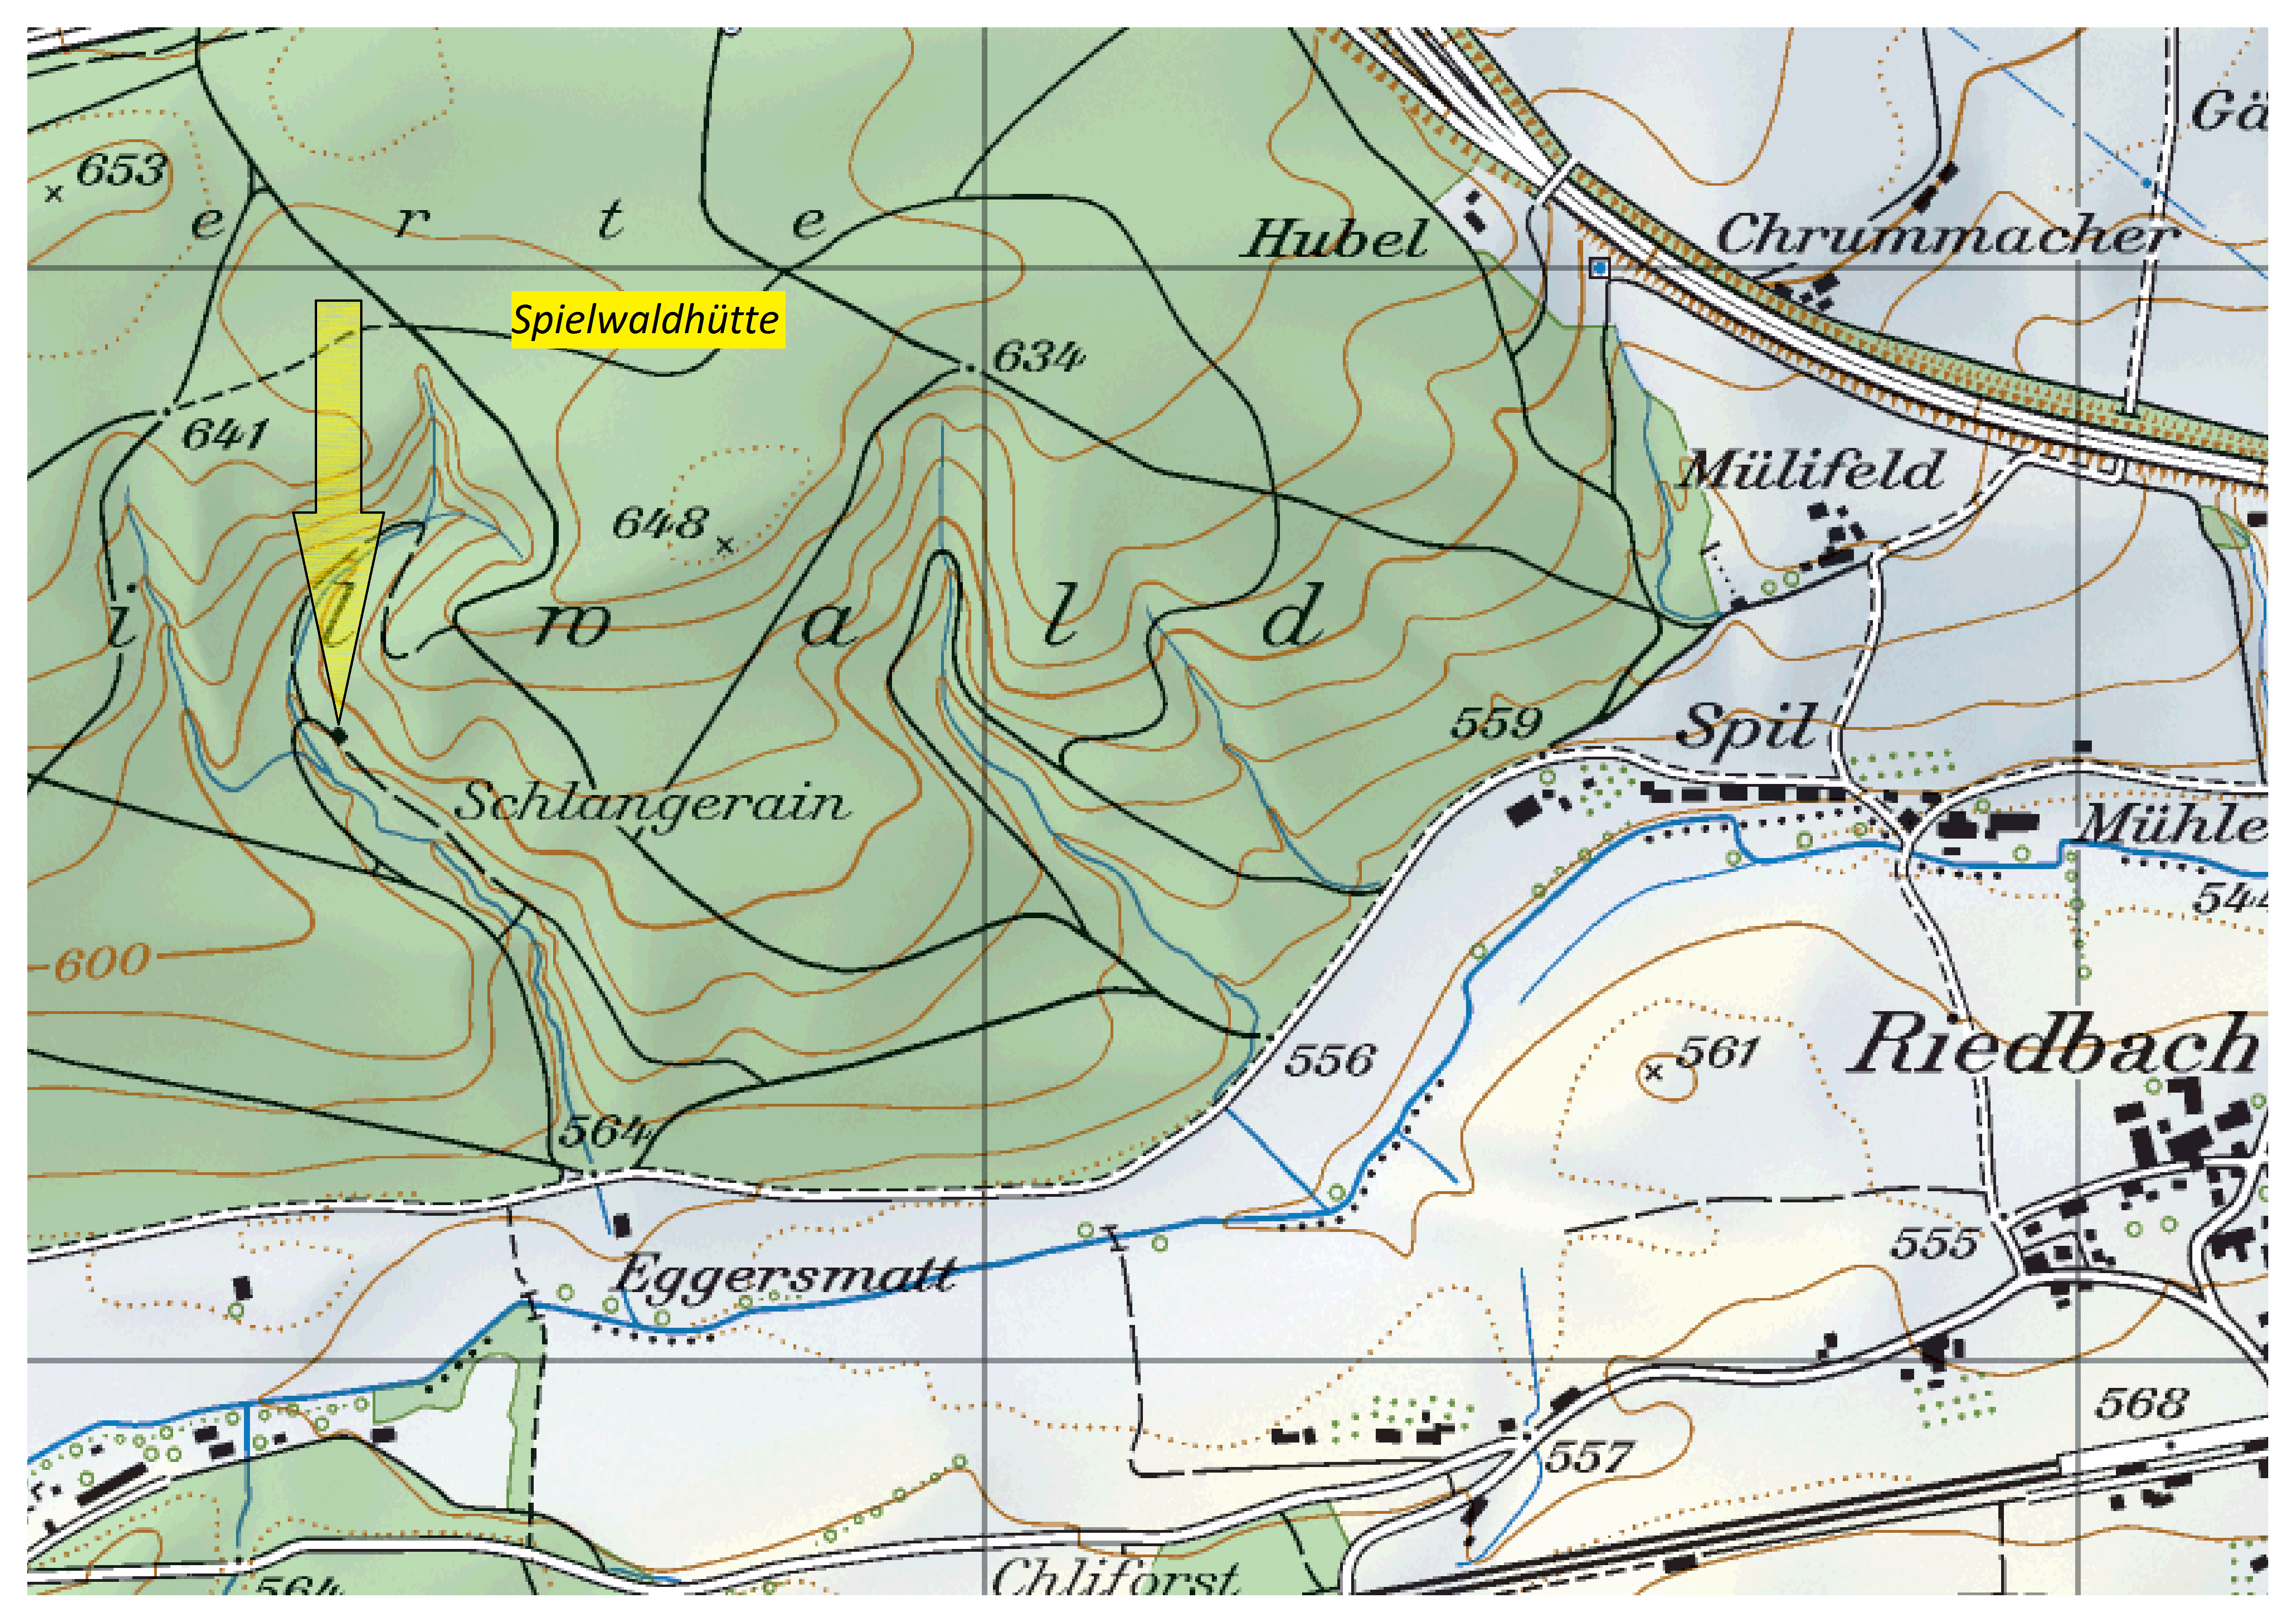 Spilwaldhütte (Karte)